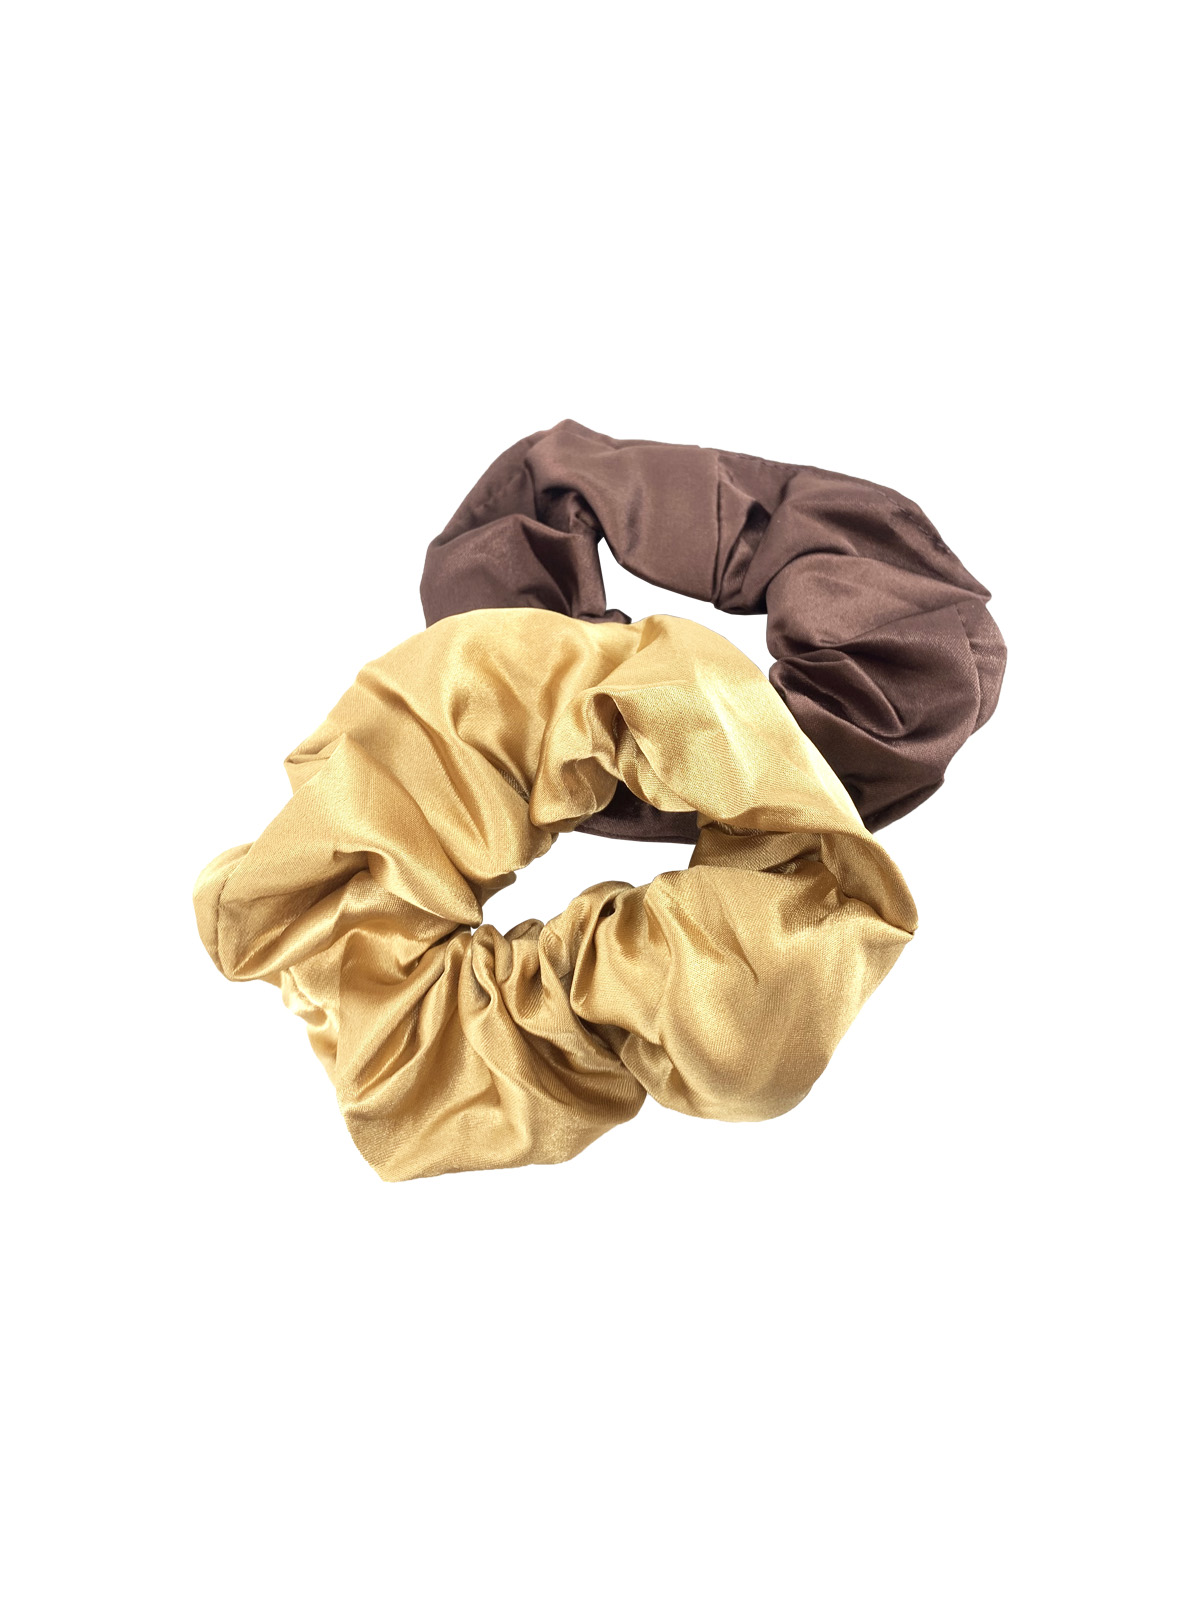 Резинки для волос 2шт на блистере "Bright collection", 2 цвета (золотой, бронзовый)